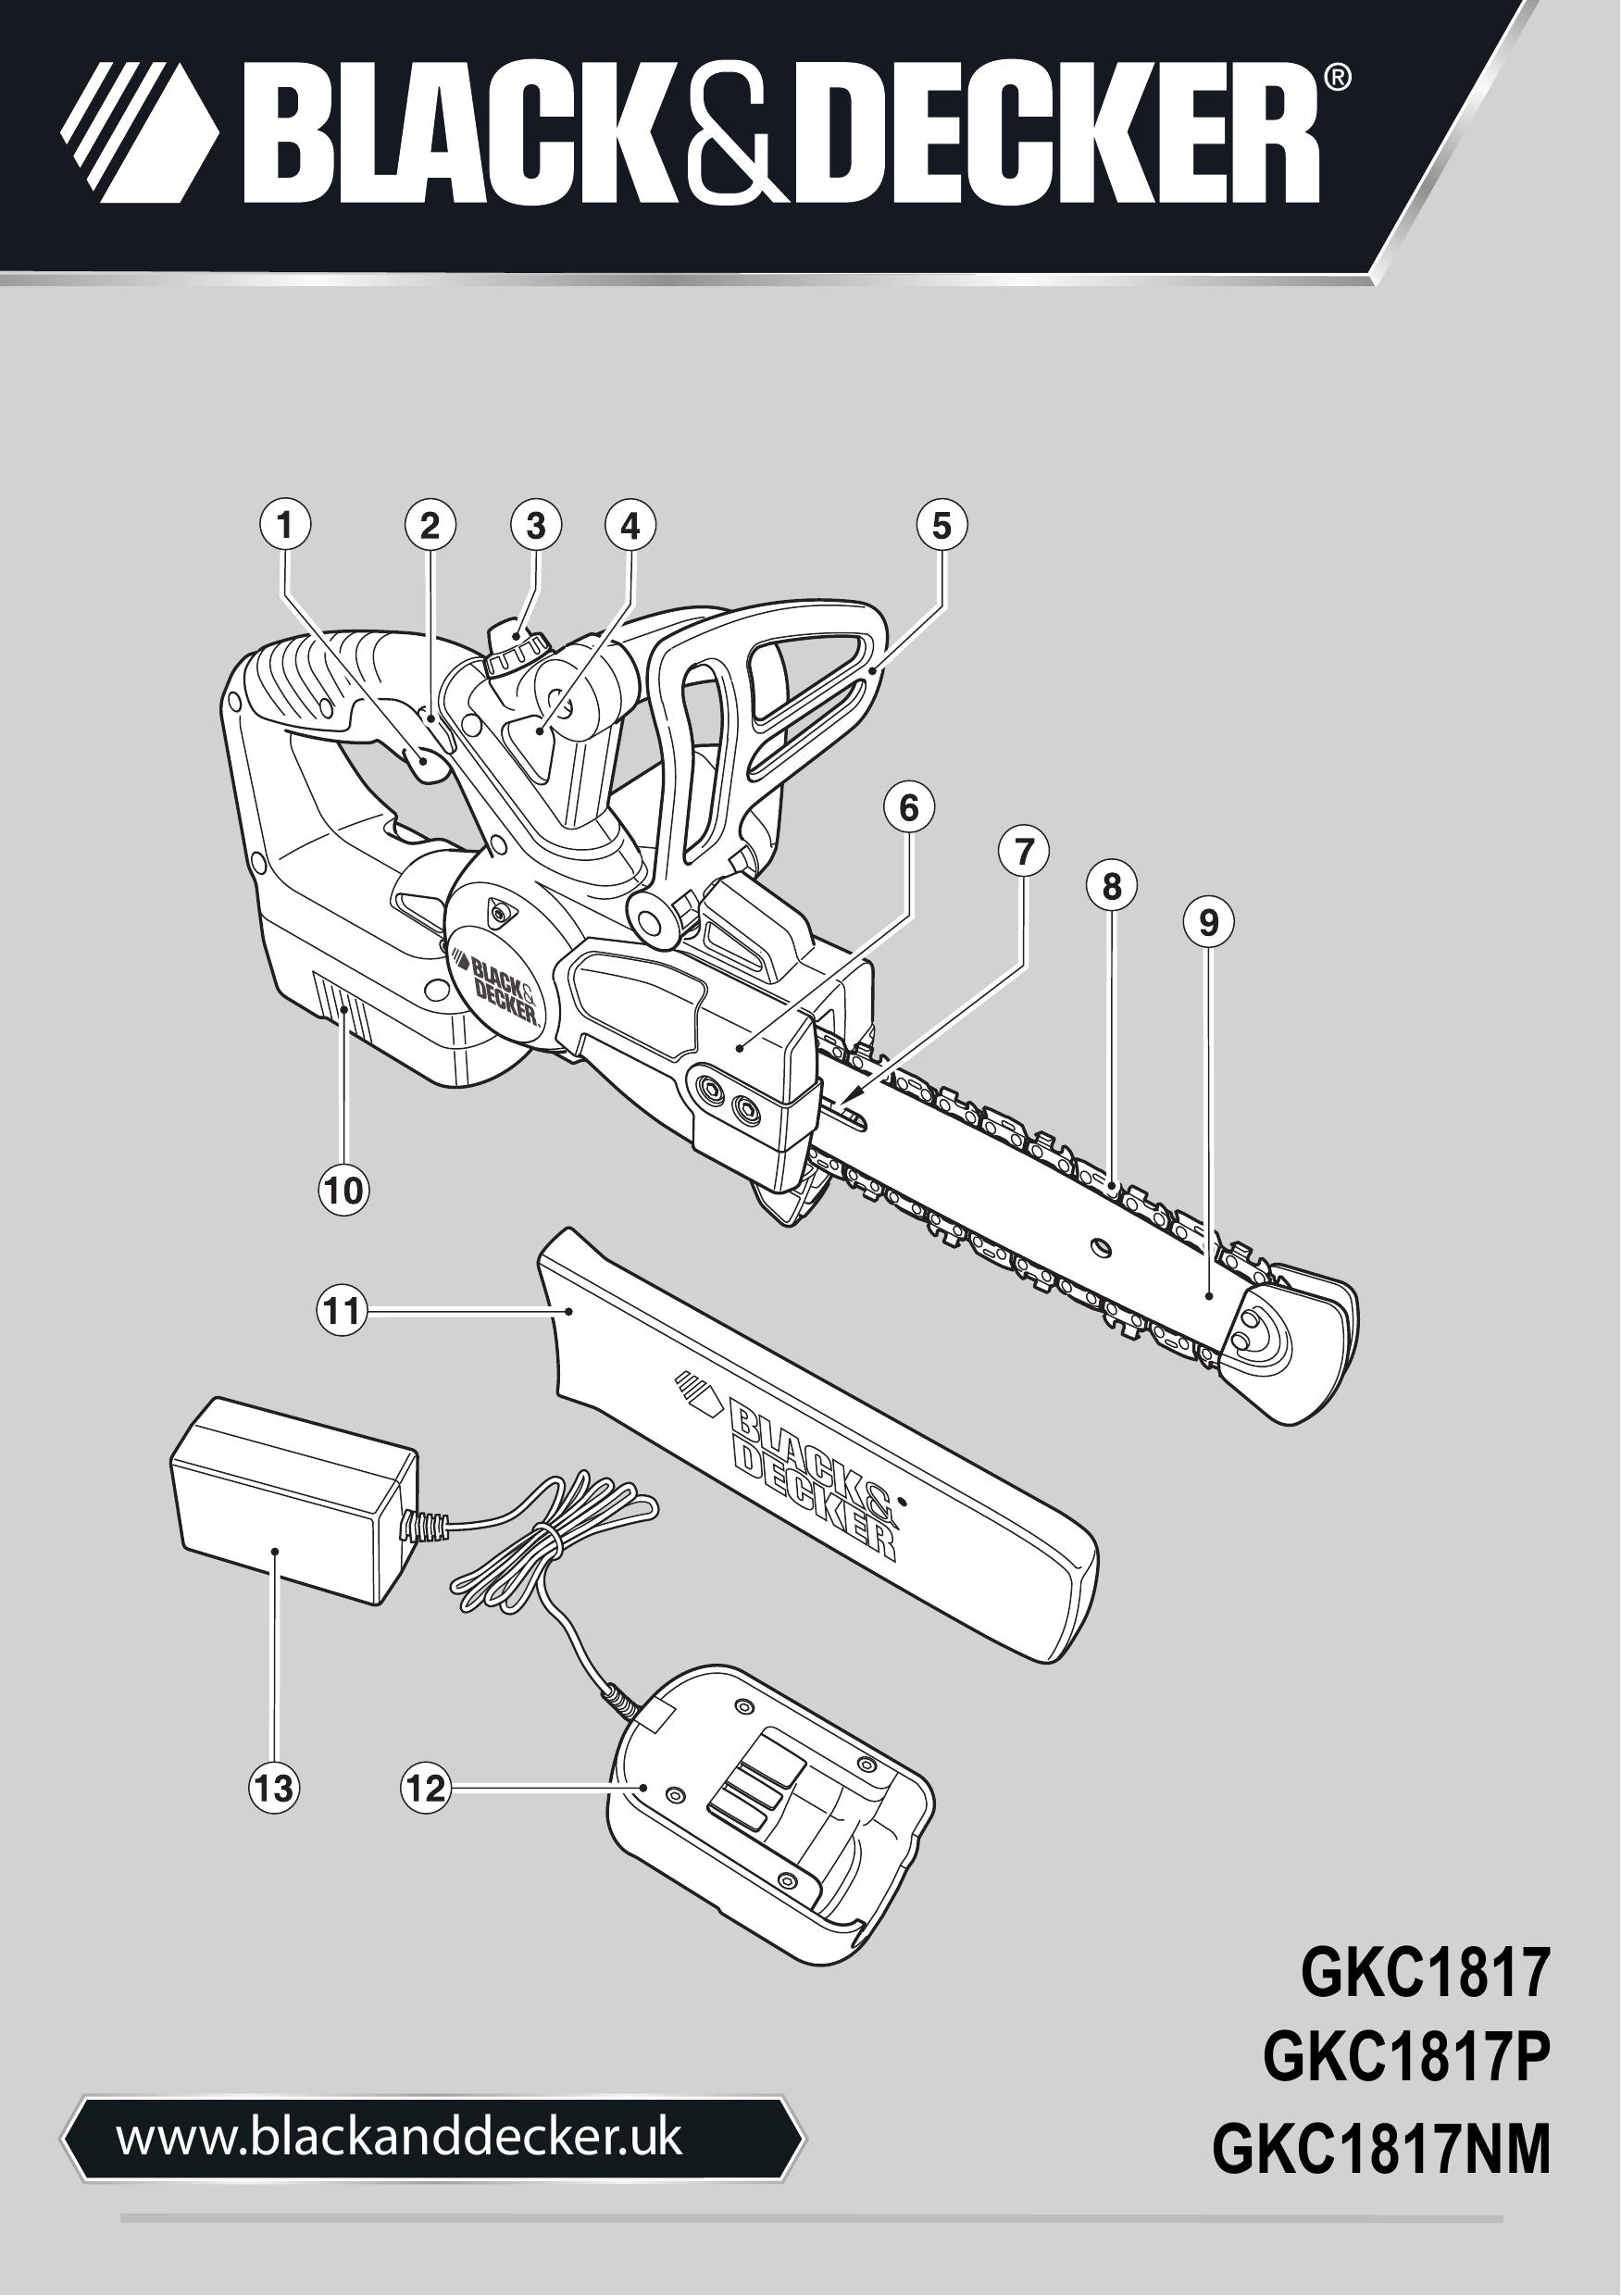 Black & Decker GKC1817 Chainsaw User Manual